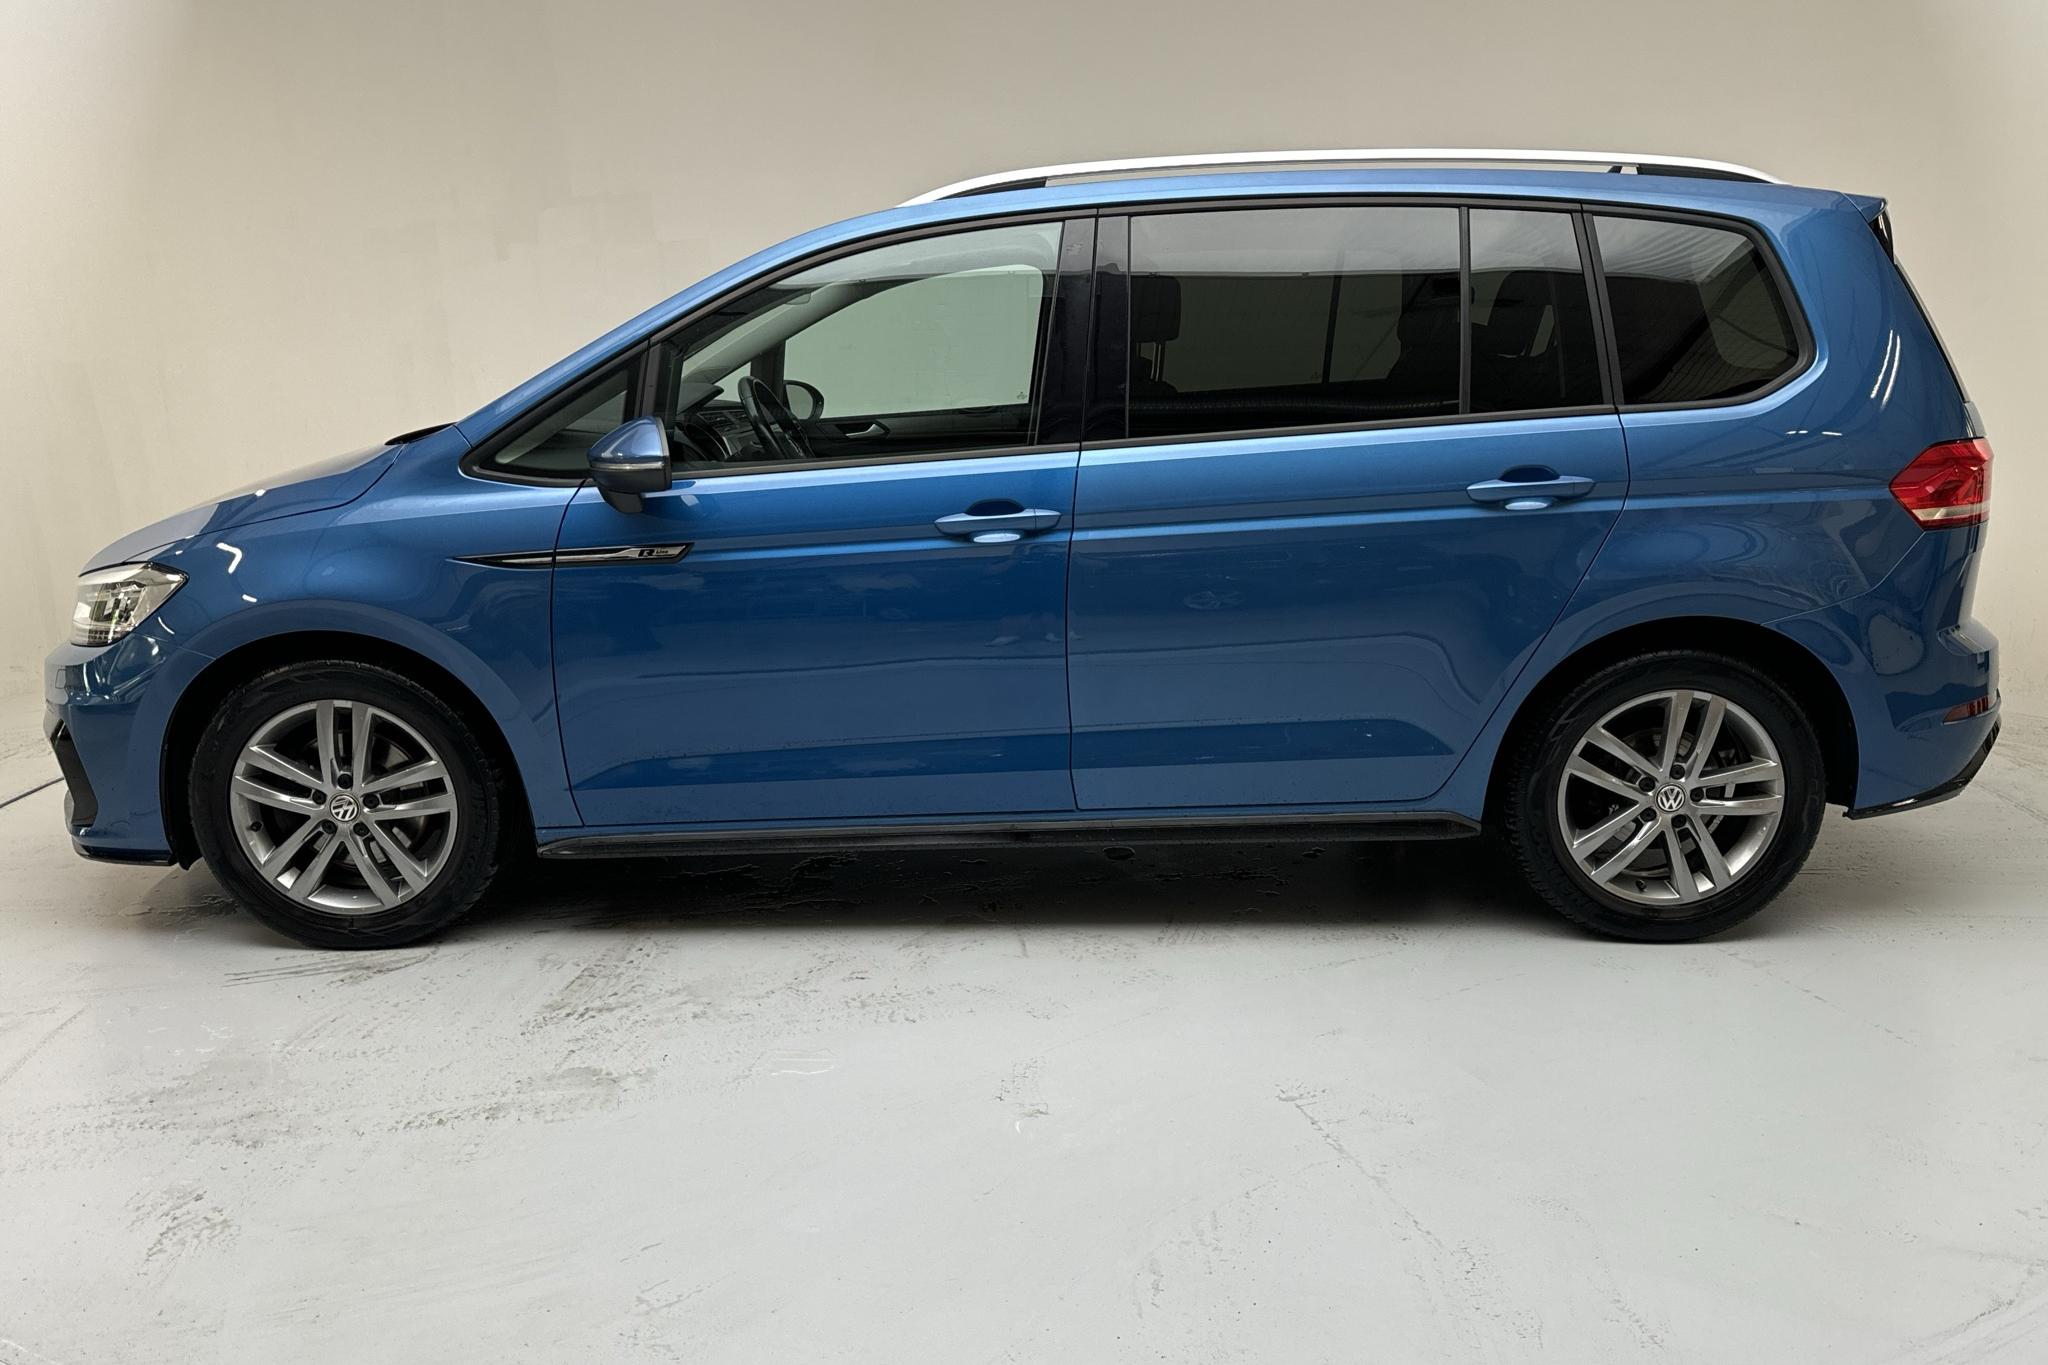 VW Touran 1.4 TSI (150hk) - 7 804 mil - Automat - Light Blue - 2018